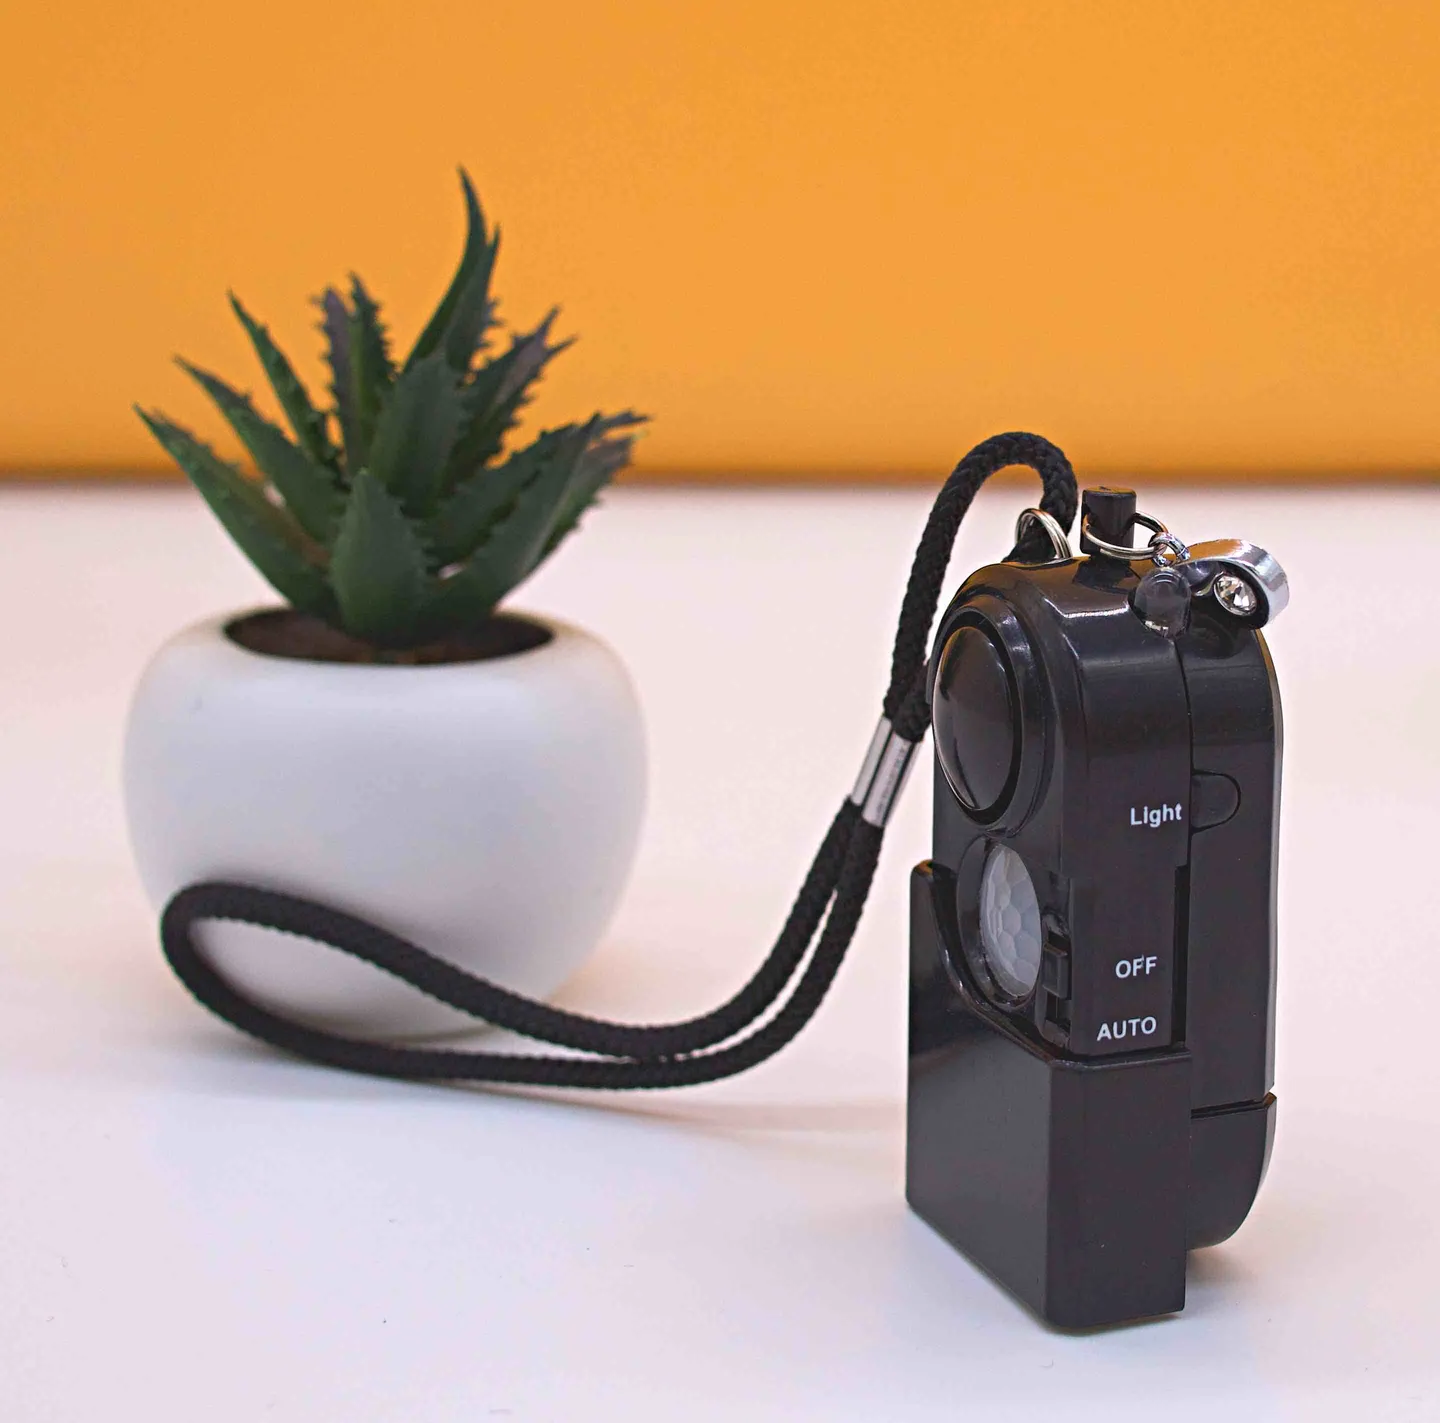 Alarme et Lampe Torche - iAlarm – L’alarme personnelle avec détecteur de mouvement 120dB et portative